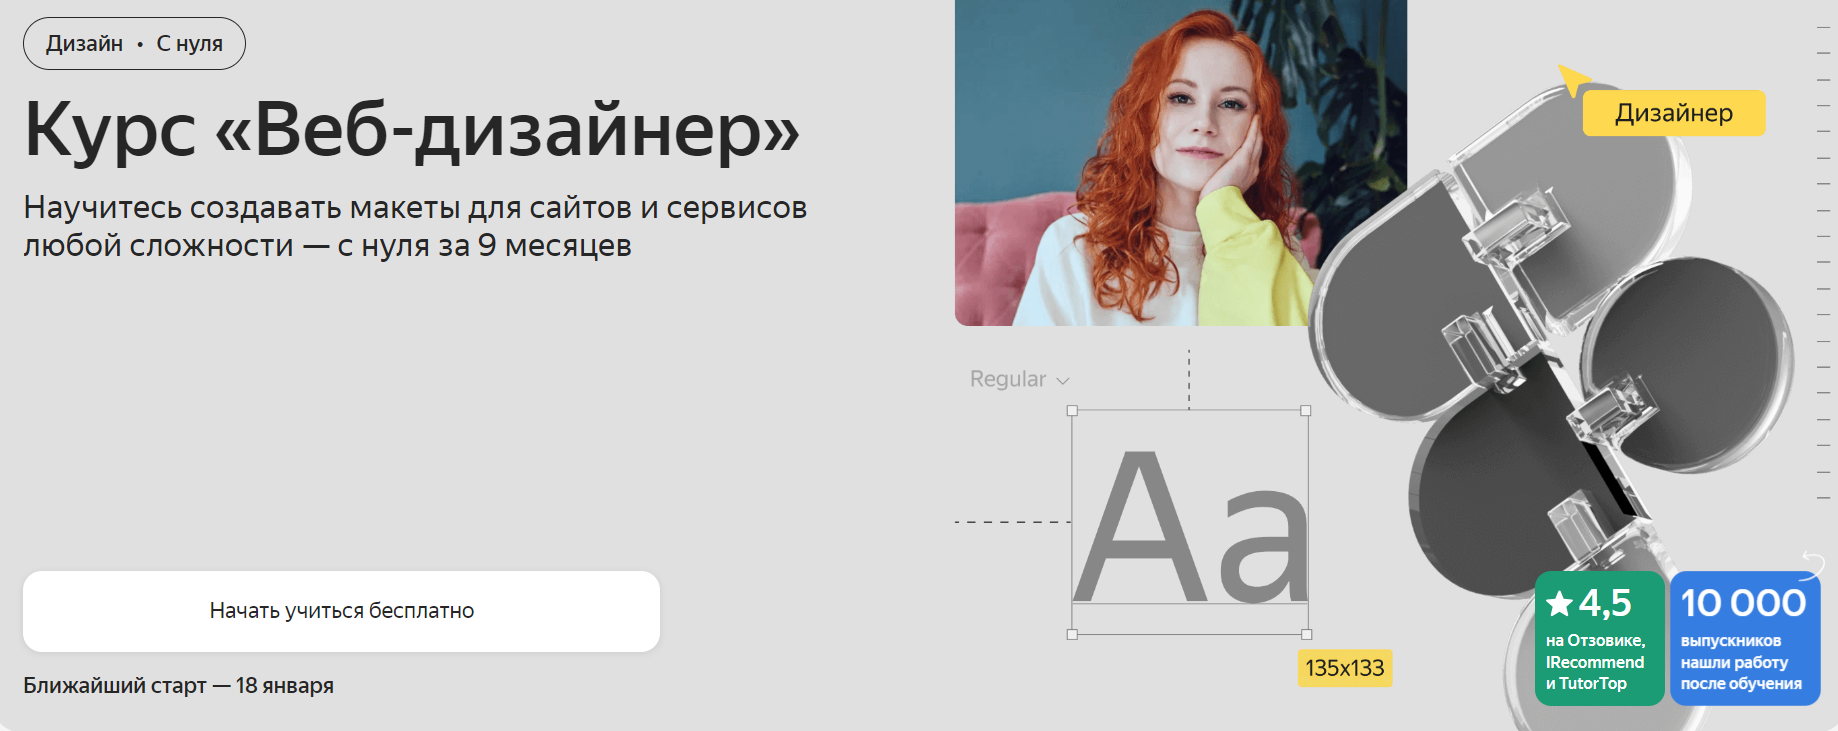 Яндекс Практикум кидает вызов с курсом «Веб-дизайнер»